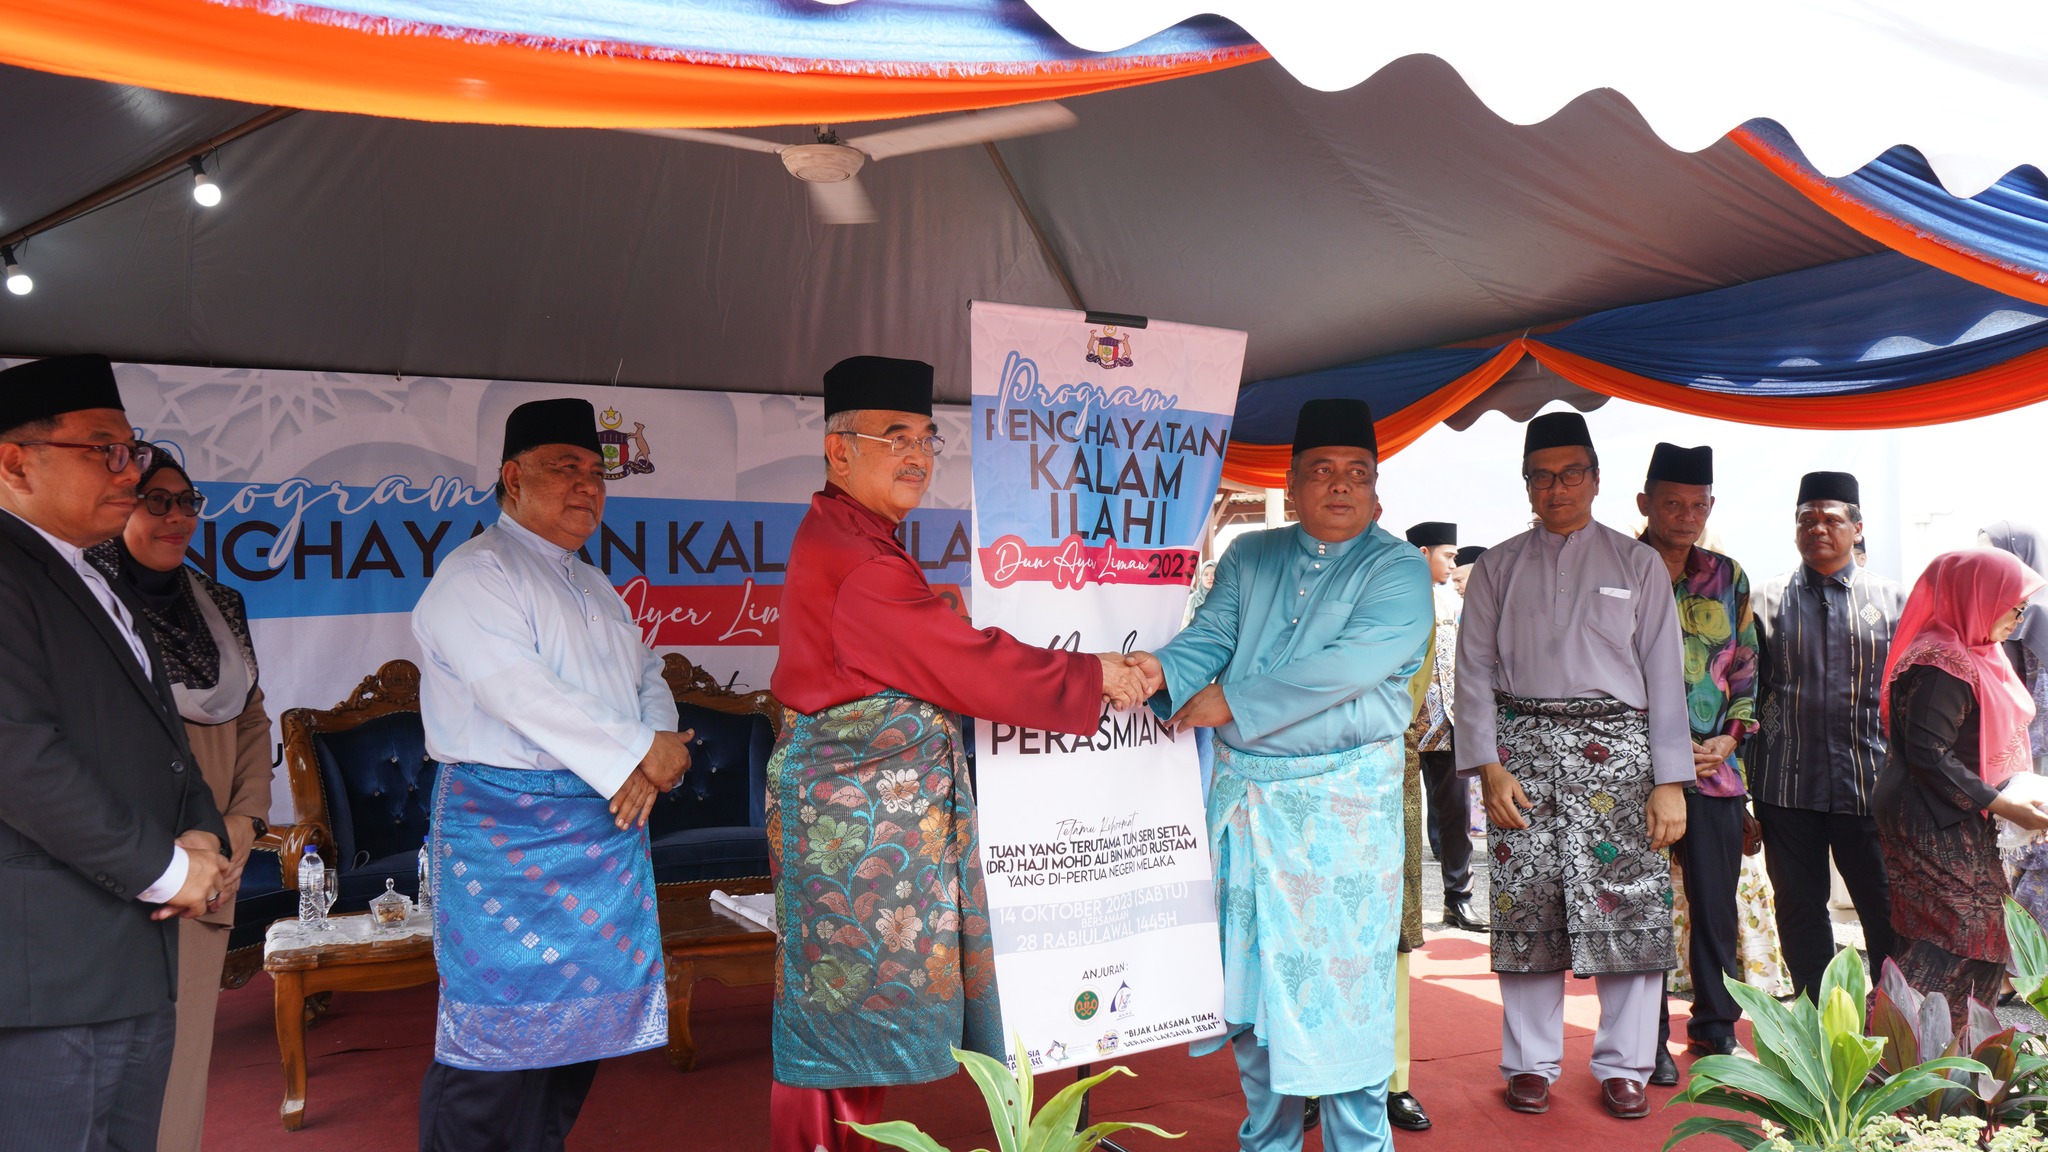 Read more about the article Yayasan AmanahRaya zakat Program Penghayatan Kalam Ilahi di Masjid Ibnu Sina Sungai Jernih, Alor Gajah, Melaka